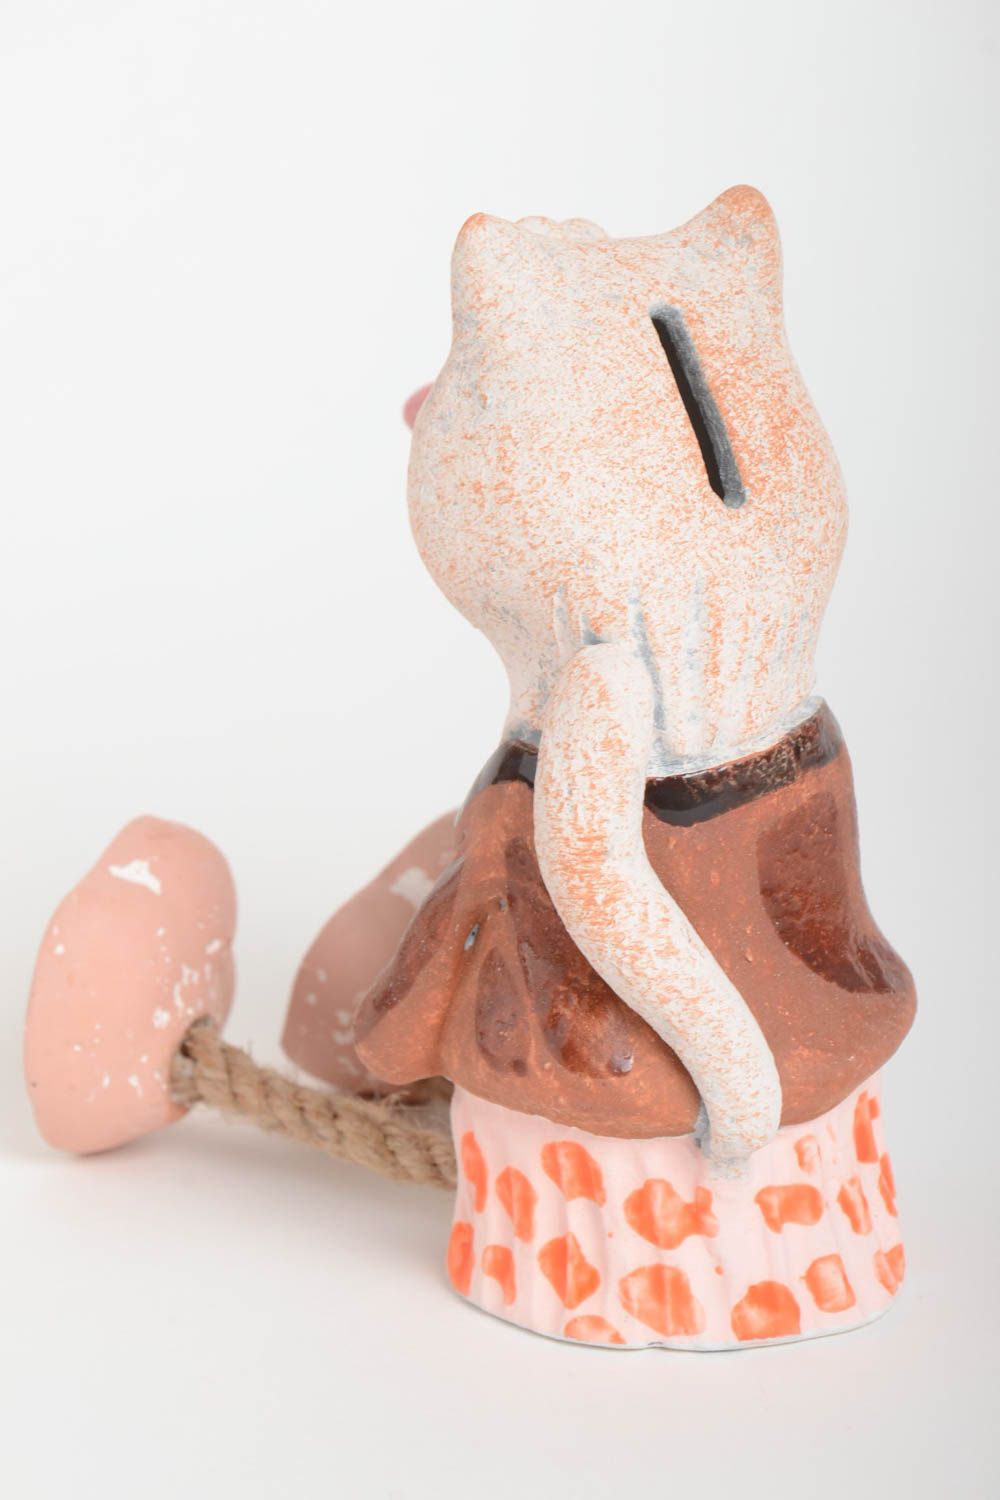 Handmade Keramik Spardose für Haus Deko Geschenk für Kinder bunt Fuchs schön foto 4